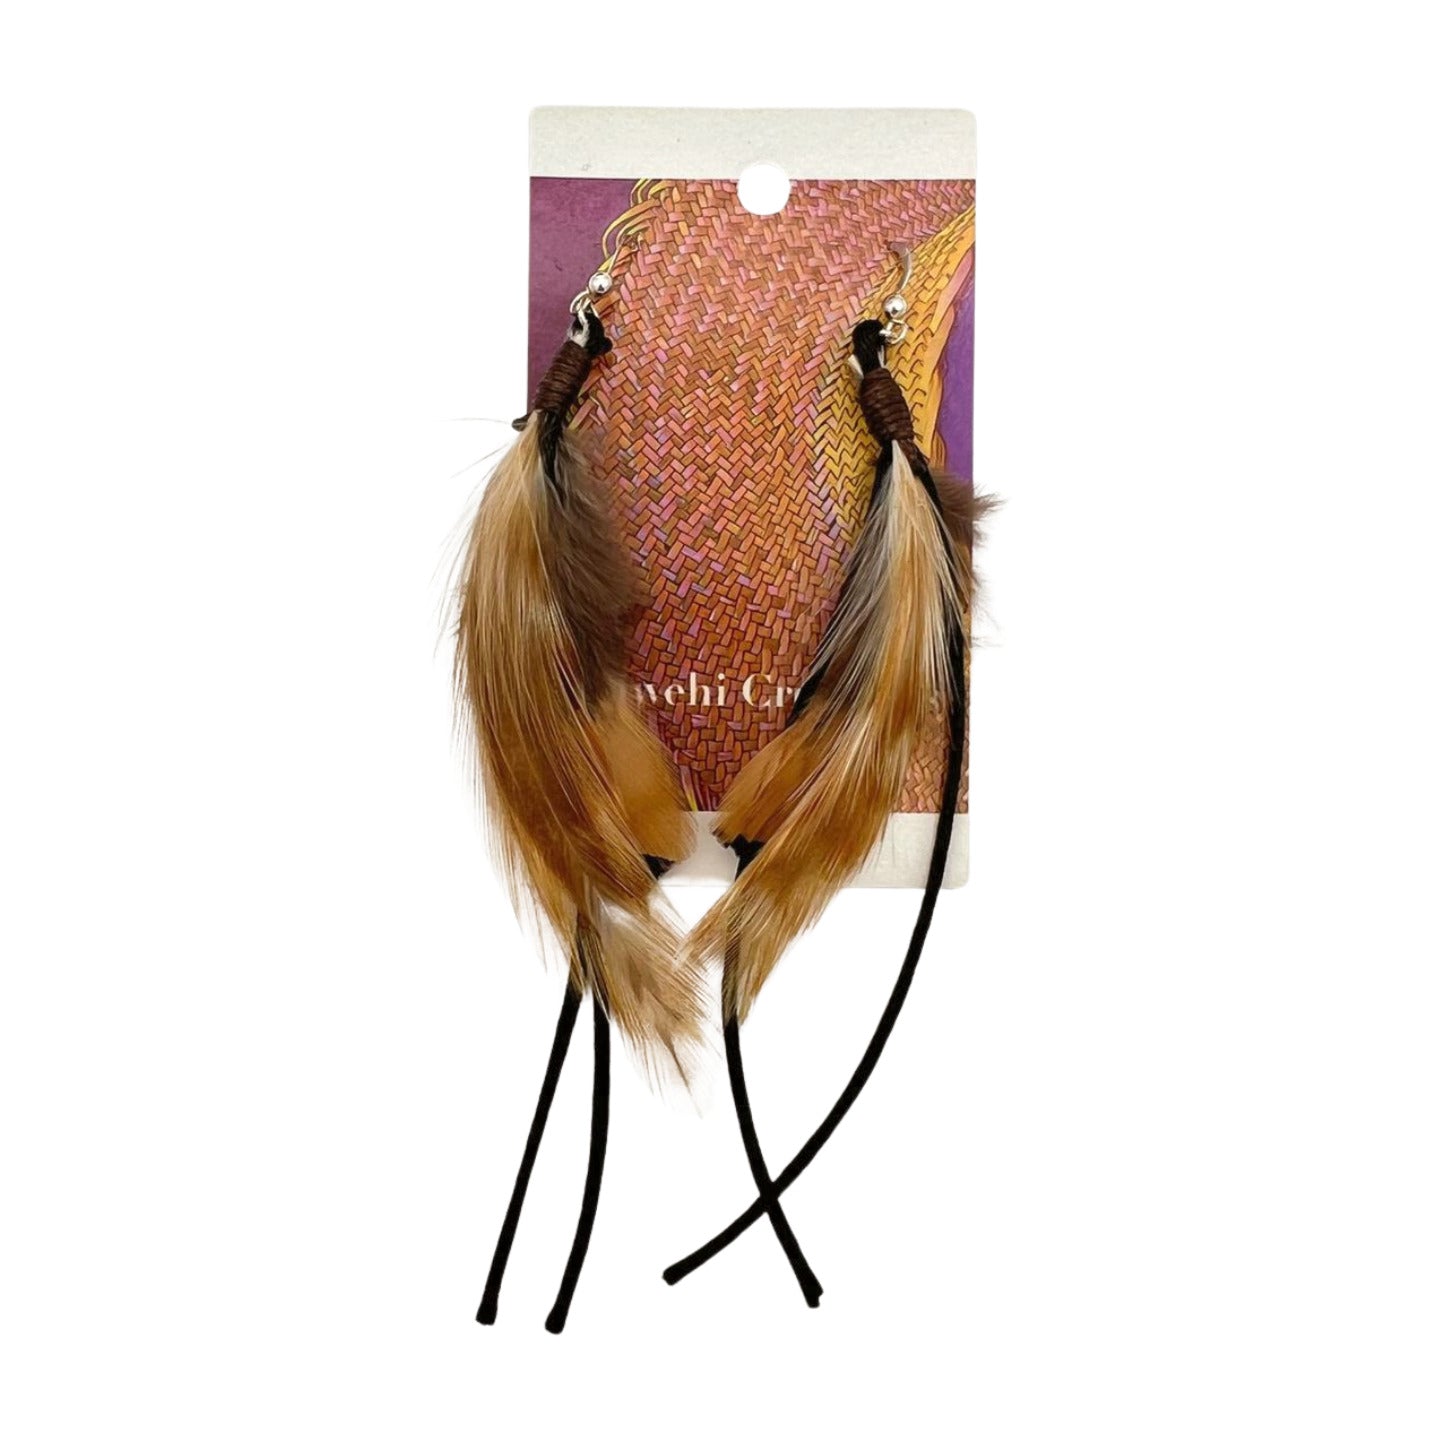 Pop-Up Mākeke - Pawehi Creations - Hulu Earrings - Style #14